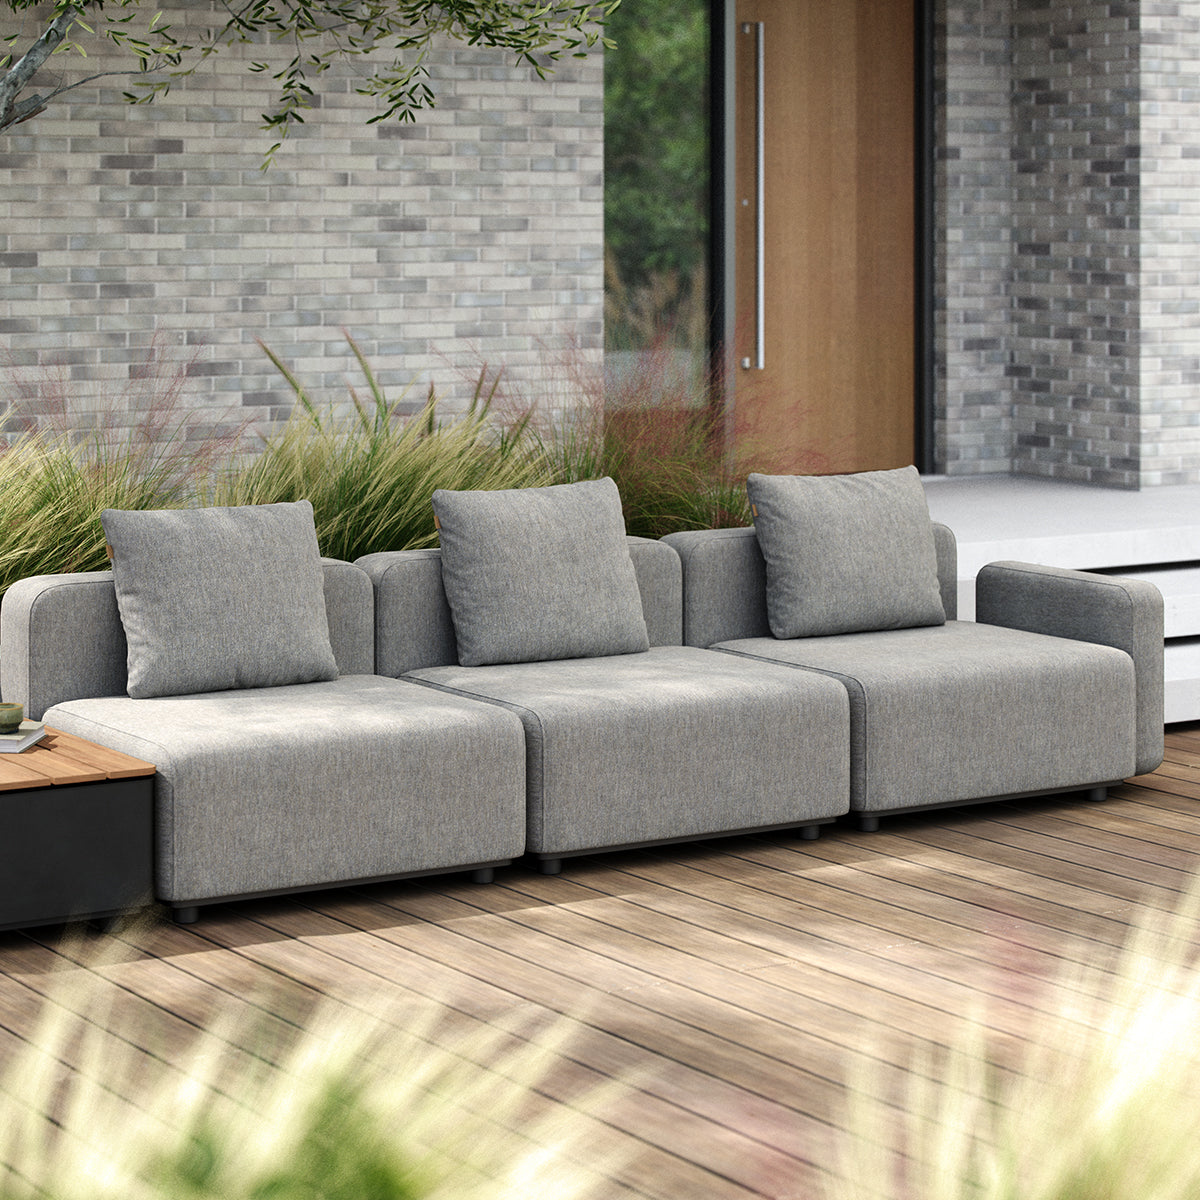 variant_41792194904237% | Modulopbygget lounge udendørs sofa med puder fra SACKit lysegrå til terrassen med opbevaring